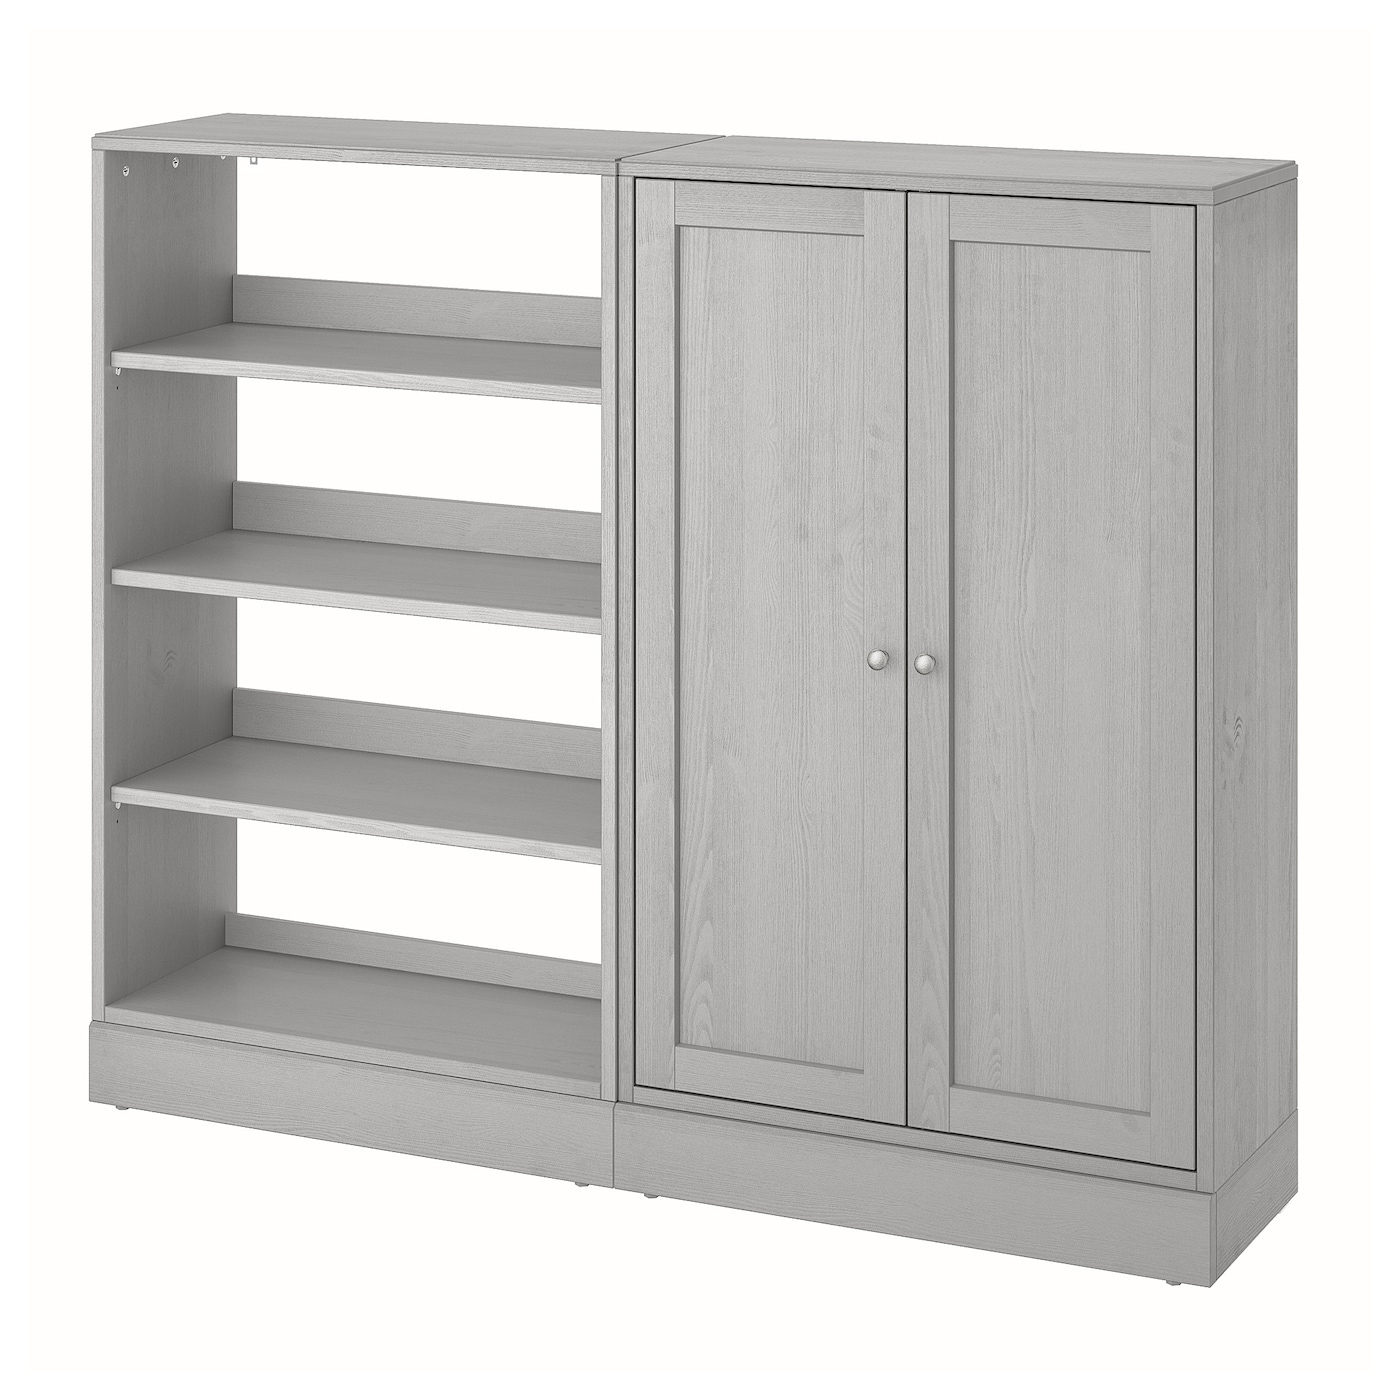 Книжный шкаф - HAVSTA IKEA/ ХАВСТА ИКЕА,  162х134 см, серый